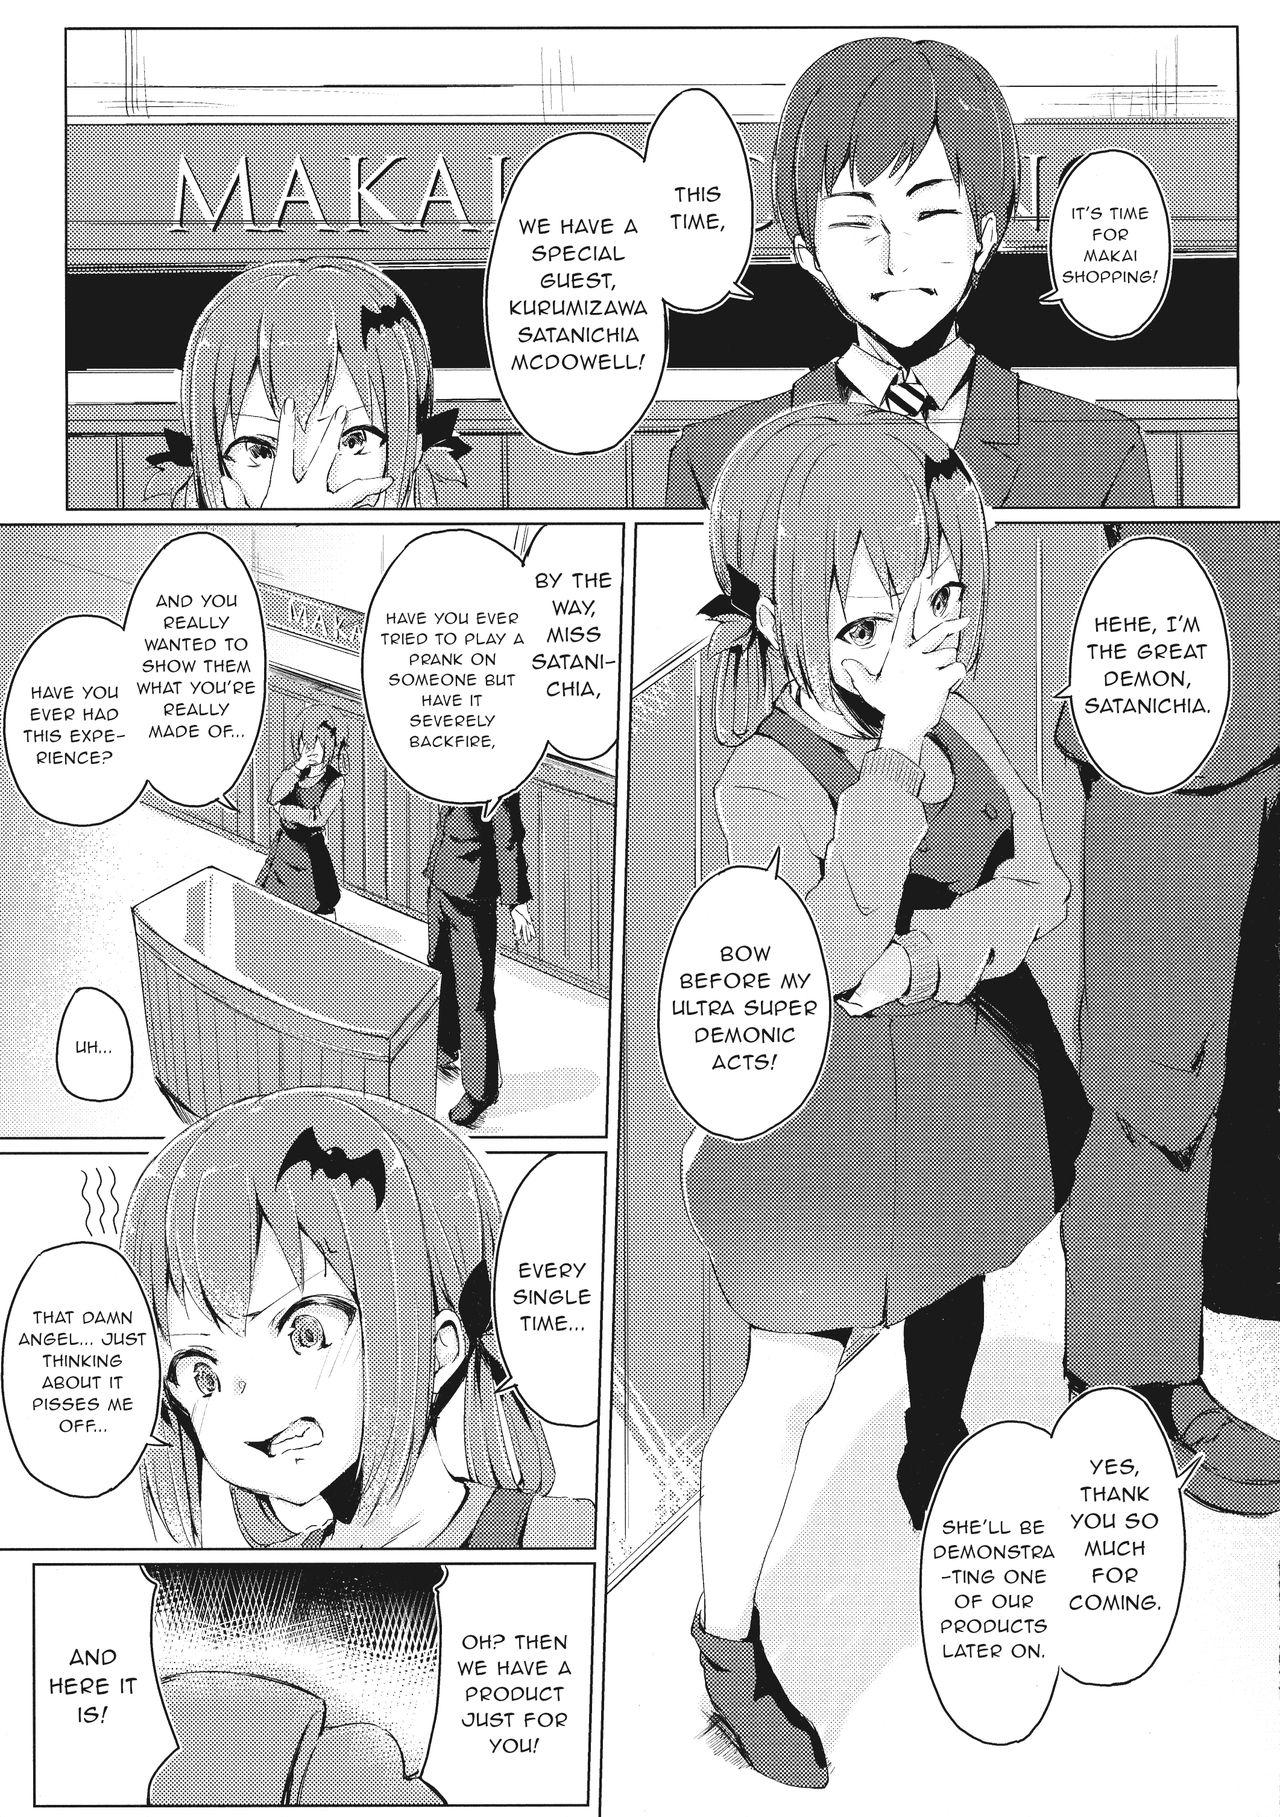 Pretty Dai Akume Satanichia - Gabriel dropout Naija - Page 5